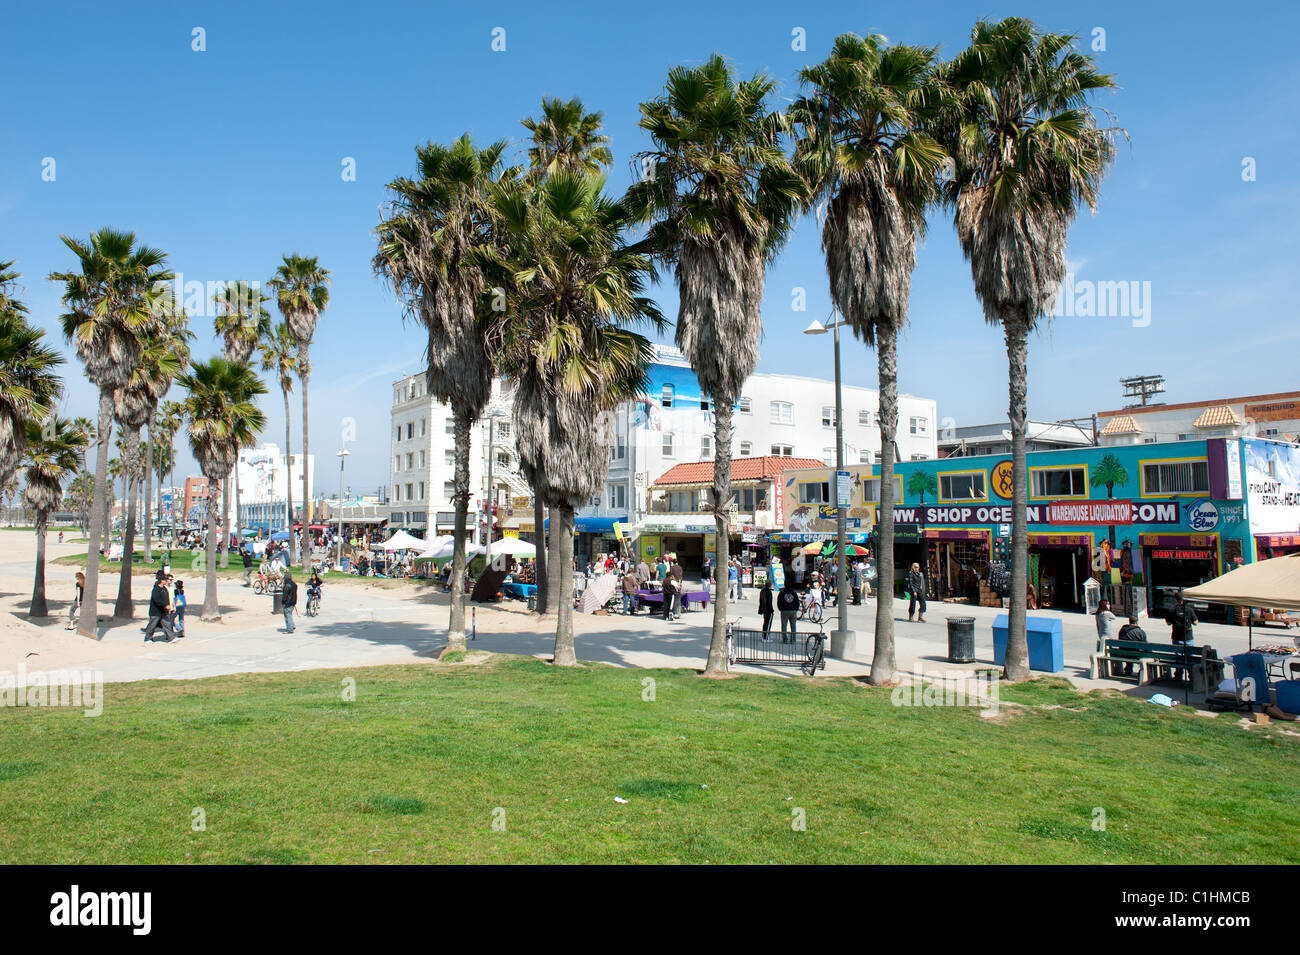 Famosa in tutto il mondo Venice Beach Boardwalk ospita quasi due chilometri di negozi, ristoranti e venditori ambulanti Foto Stock